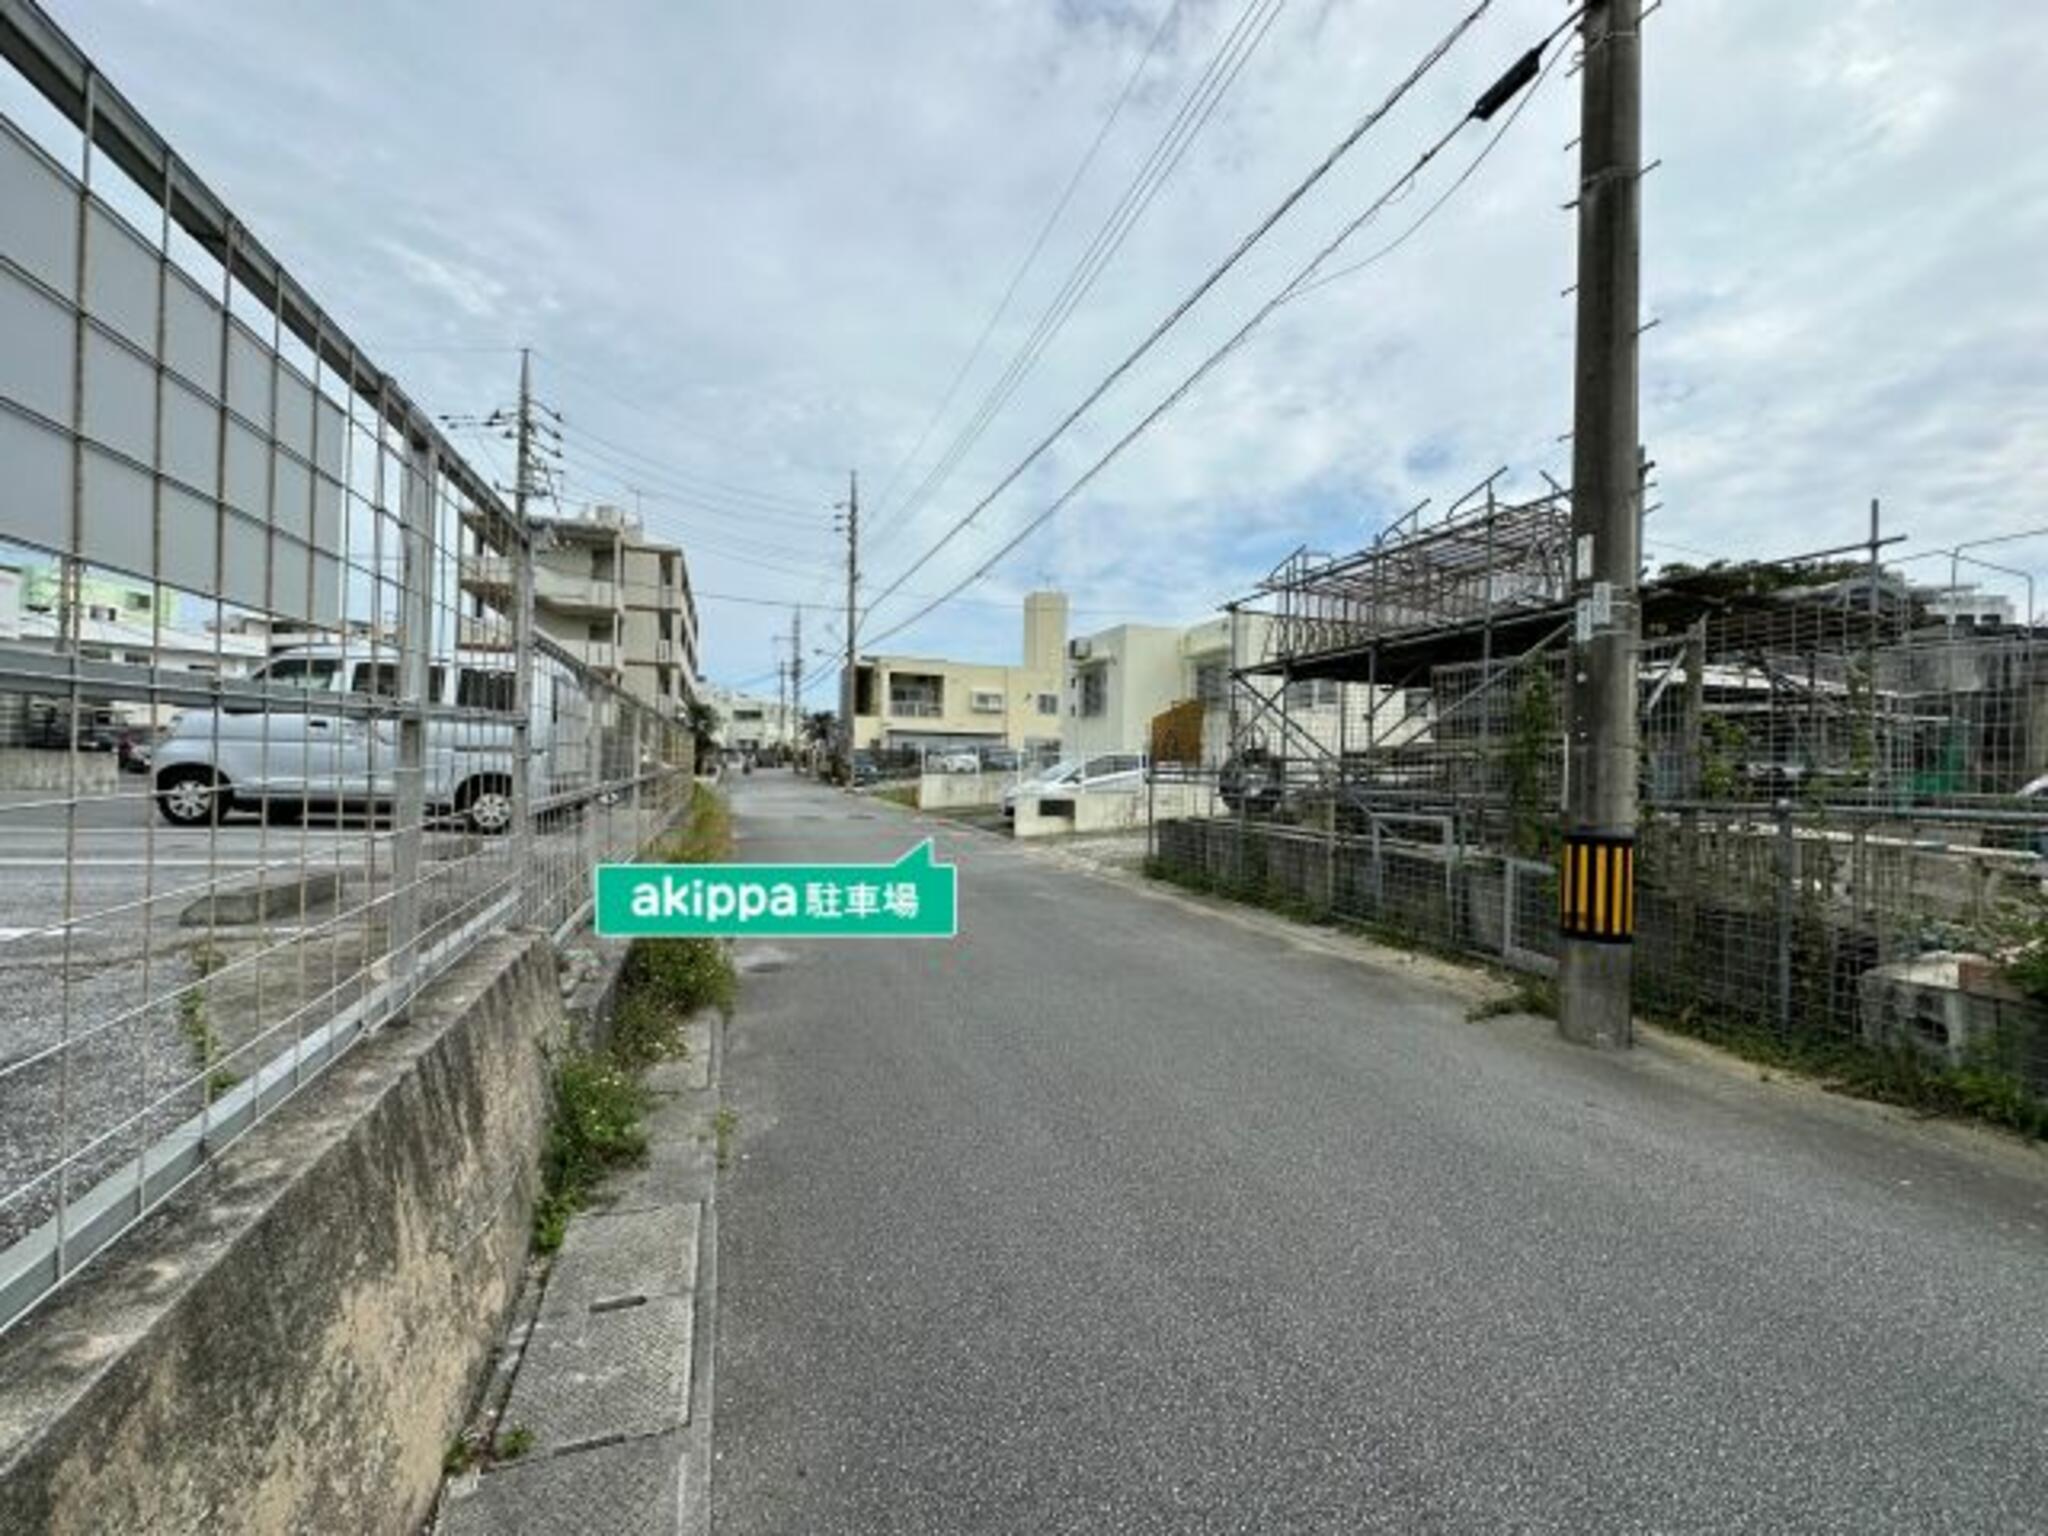 akippa駐車場:沖縄県沖縄市諸見里3丁目46-37の代表写真2